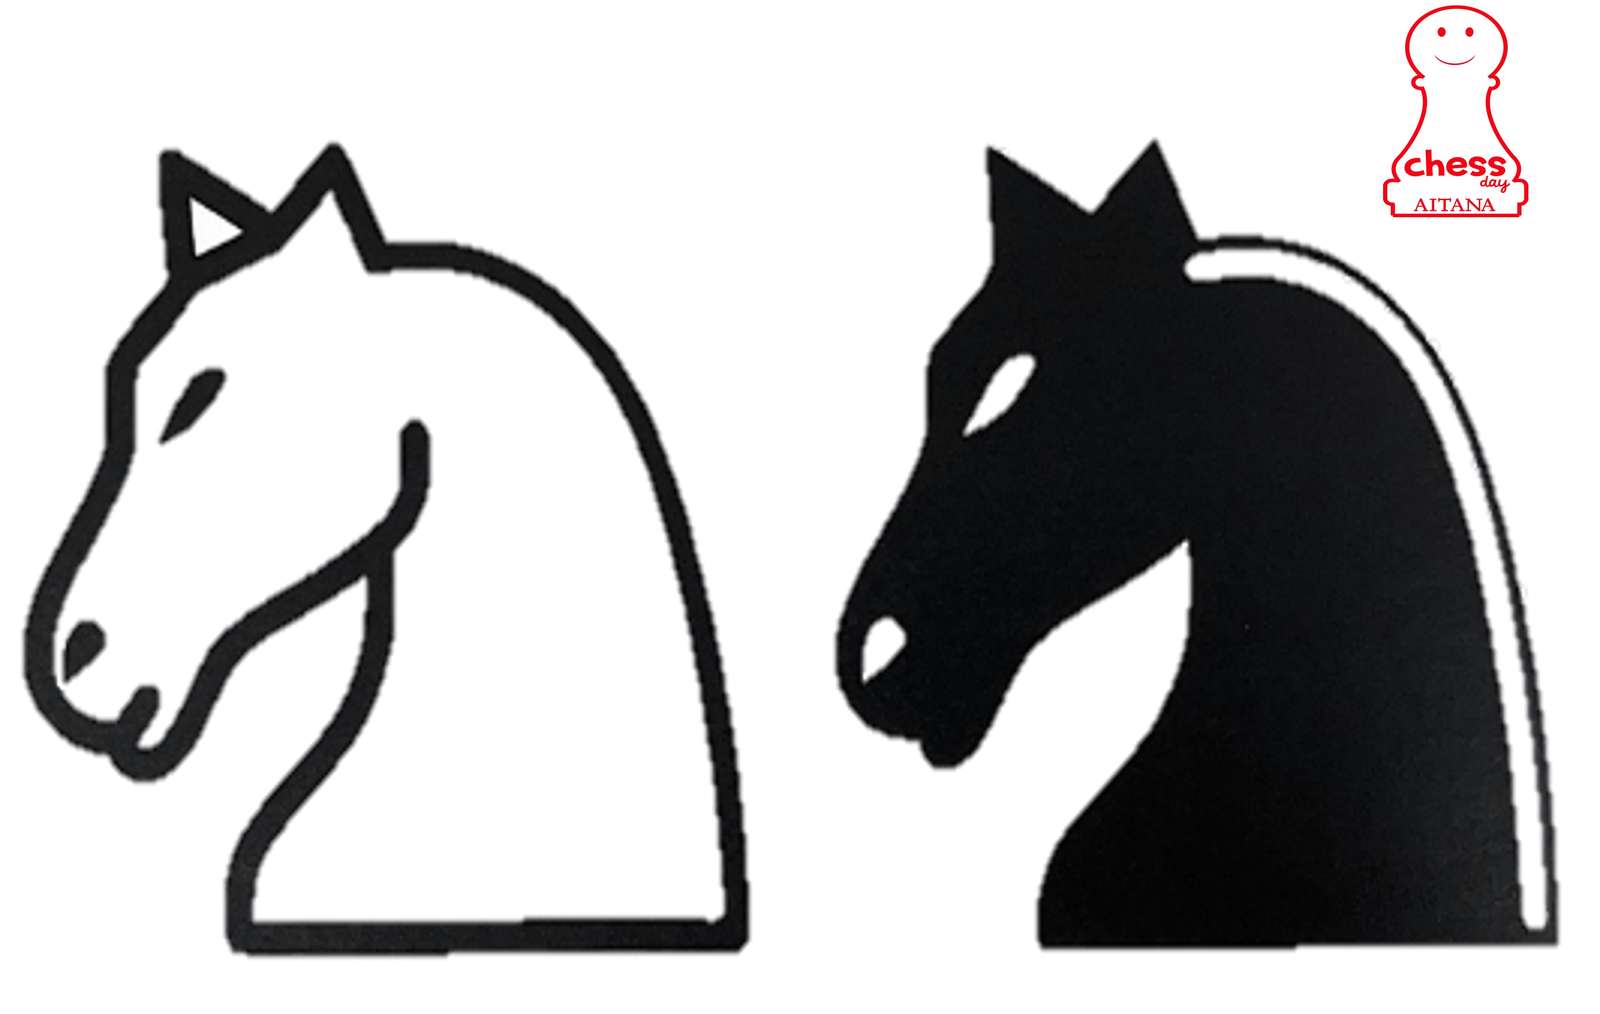 cai de șah puzzle online